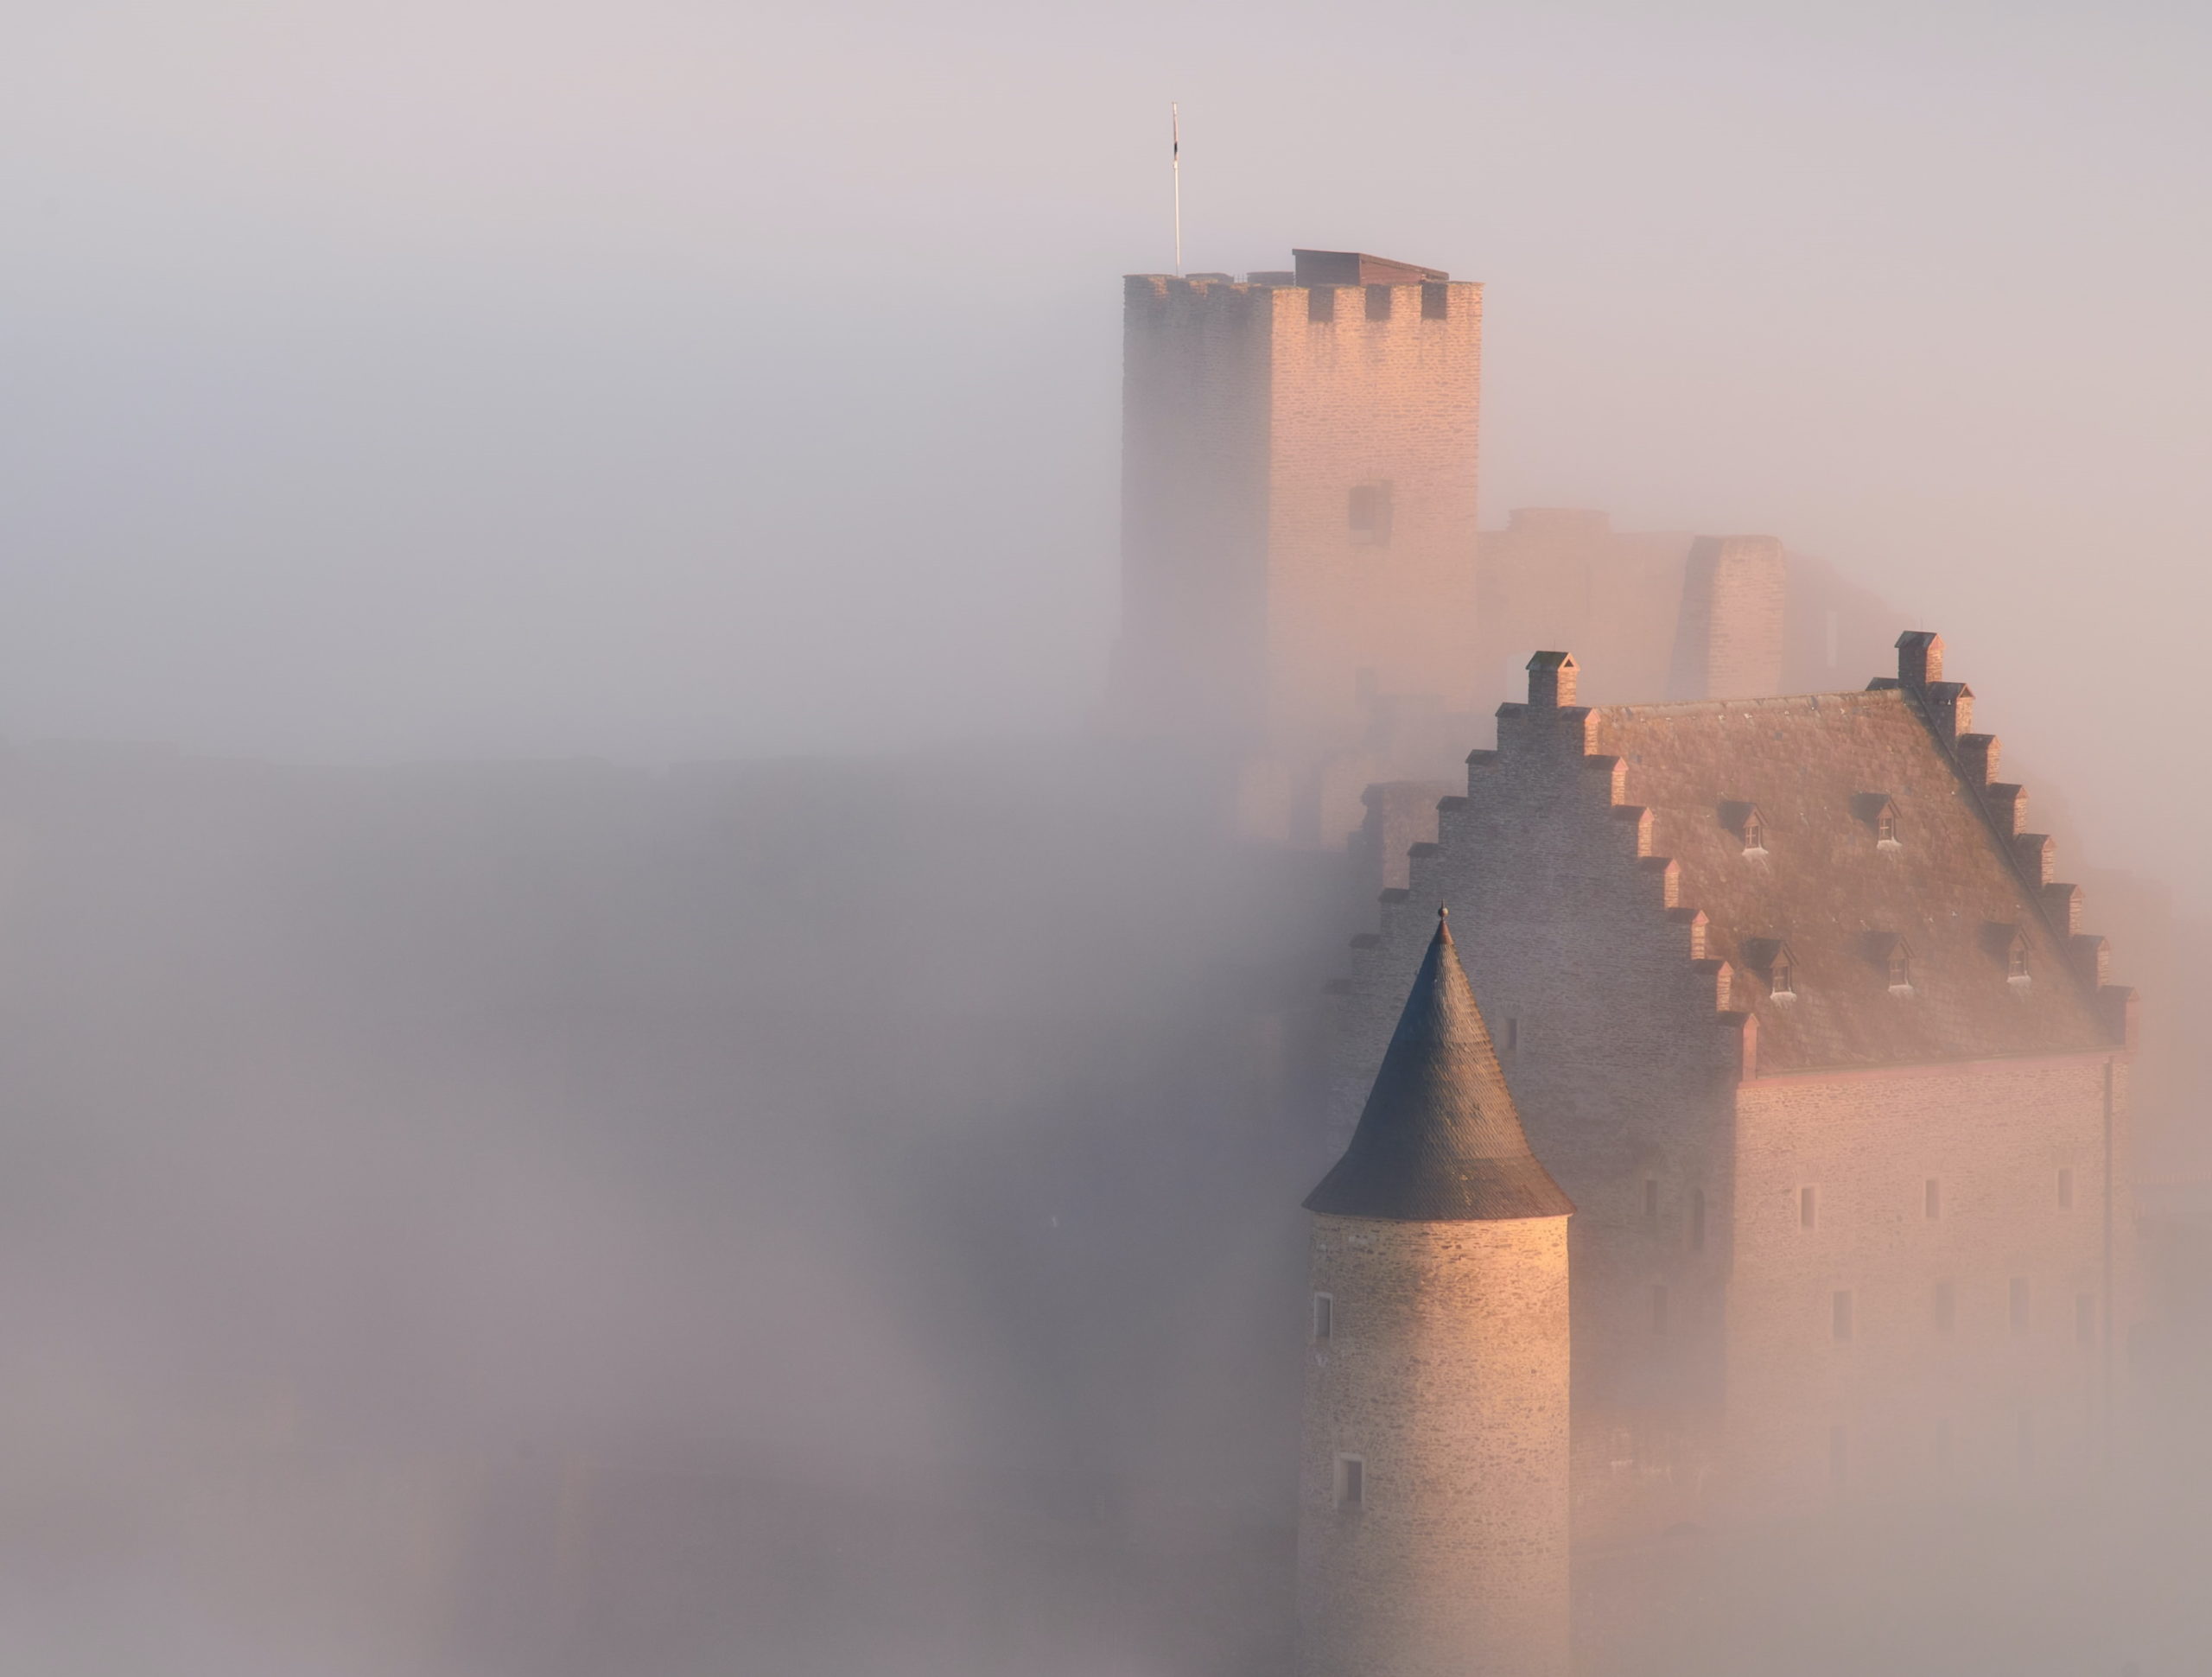 Dekoration: Zu sehen ist eine Burg im Nebel (by Johny Goerend, unsplash.com)